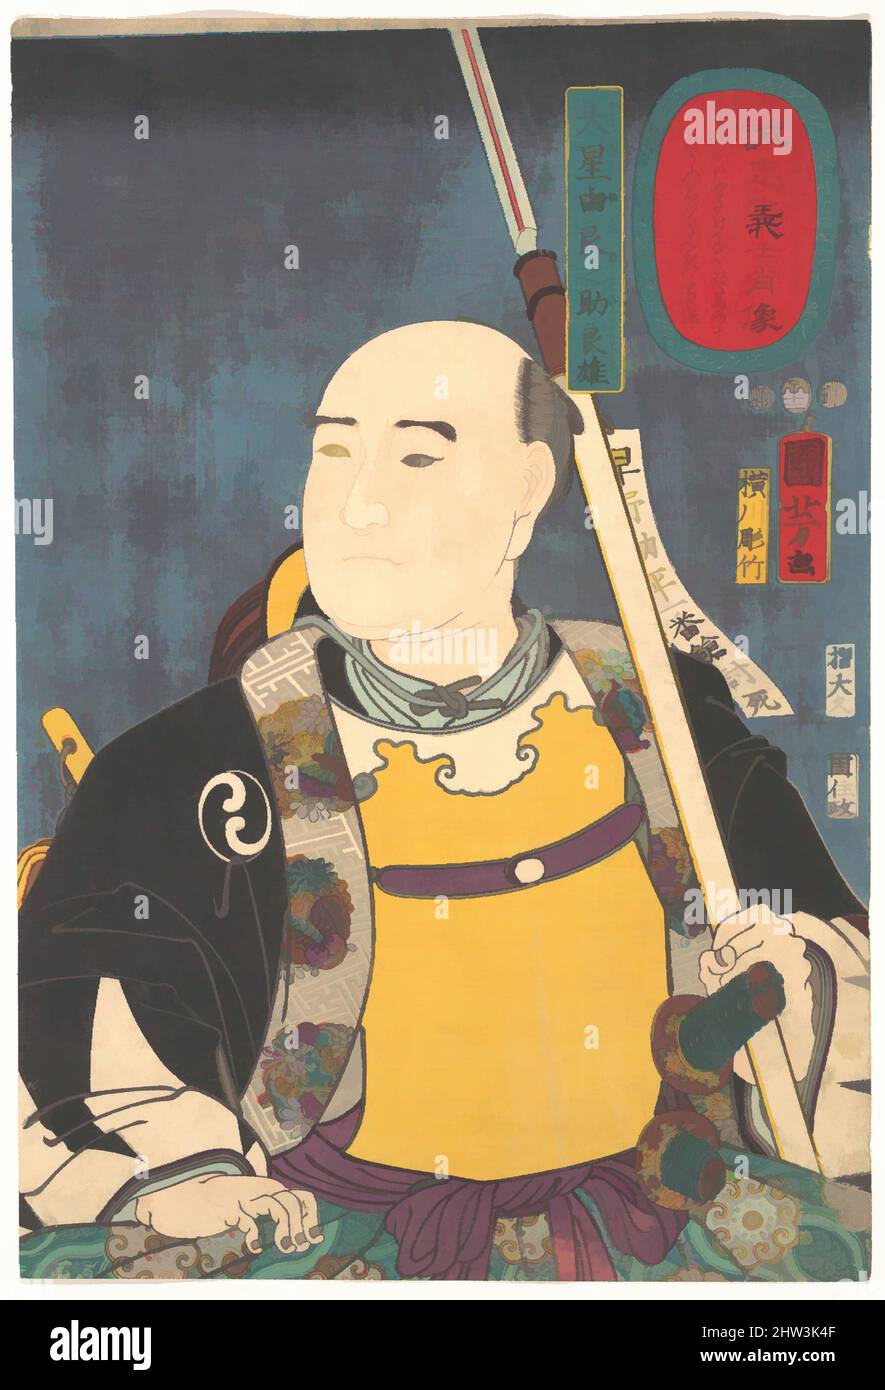 Art inspiré par Portrait d'Oboshi Yuranosuke Yoshio (le leader), période Edo (1615–1868), 1852, Japon, imprimé polychrome sur bois; Encre et couleur sur papier, H. 14 5/8 po. (37,1 cm) ; avec 9 7/8 po (25,1 cm), estampes, Utagawa Kuniyoshi (japonais, 1797–1861), le samouraï dans cet imprimé porte, oeuvres classiques modernisées par Artotop avec une touche de modernité. Formes, couleur et valeur, impact visuel accrocheur sur l'art émotions par la liberté d'œuvres d'art d'une manière contemporaine. Un message intemporel qui cherche une nouvelle direction créative. Artistes qui se tournent vers le support numérique et créent le NFT Artotop Banque D'Images